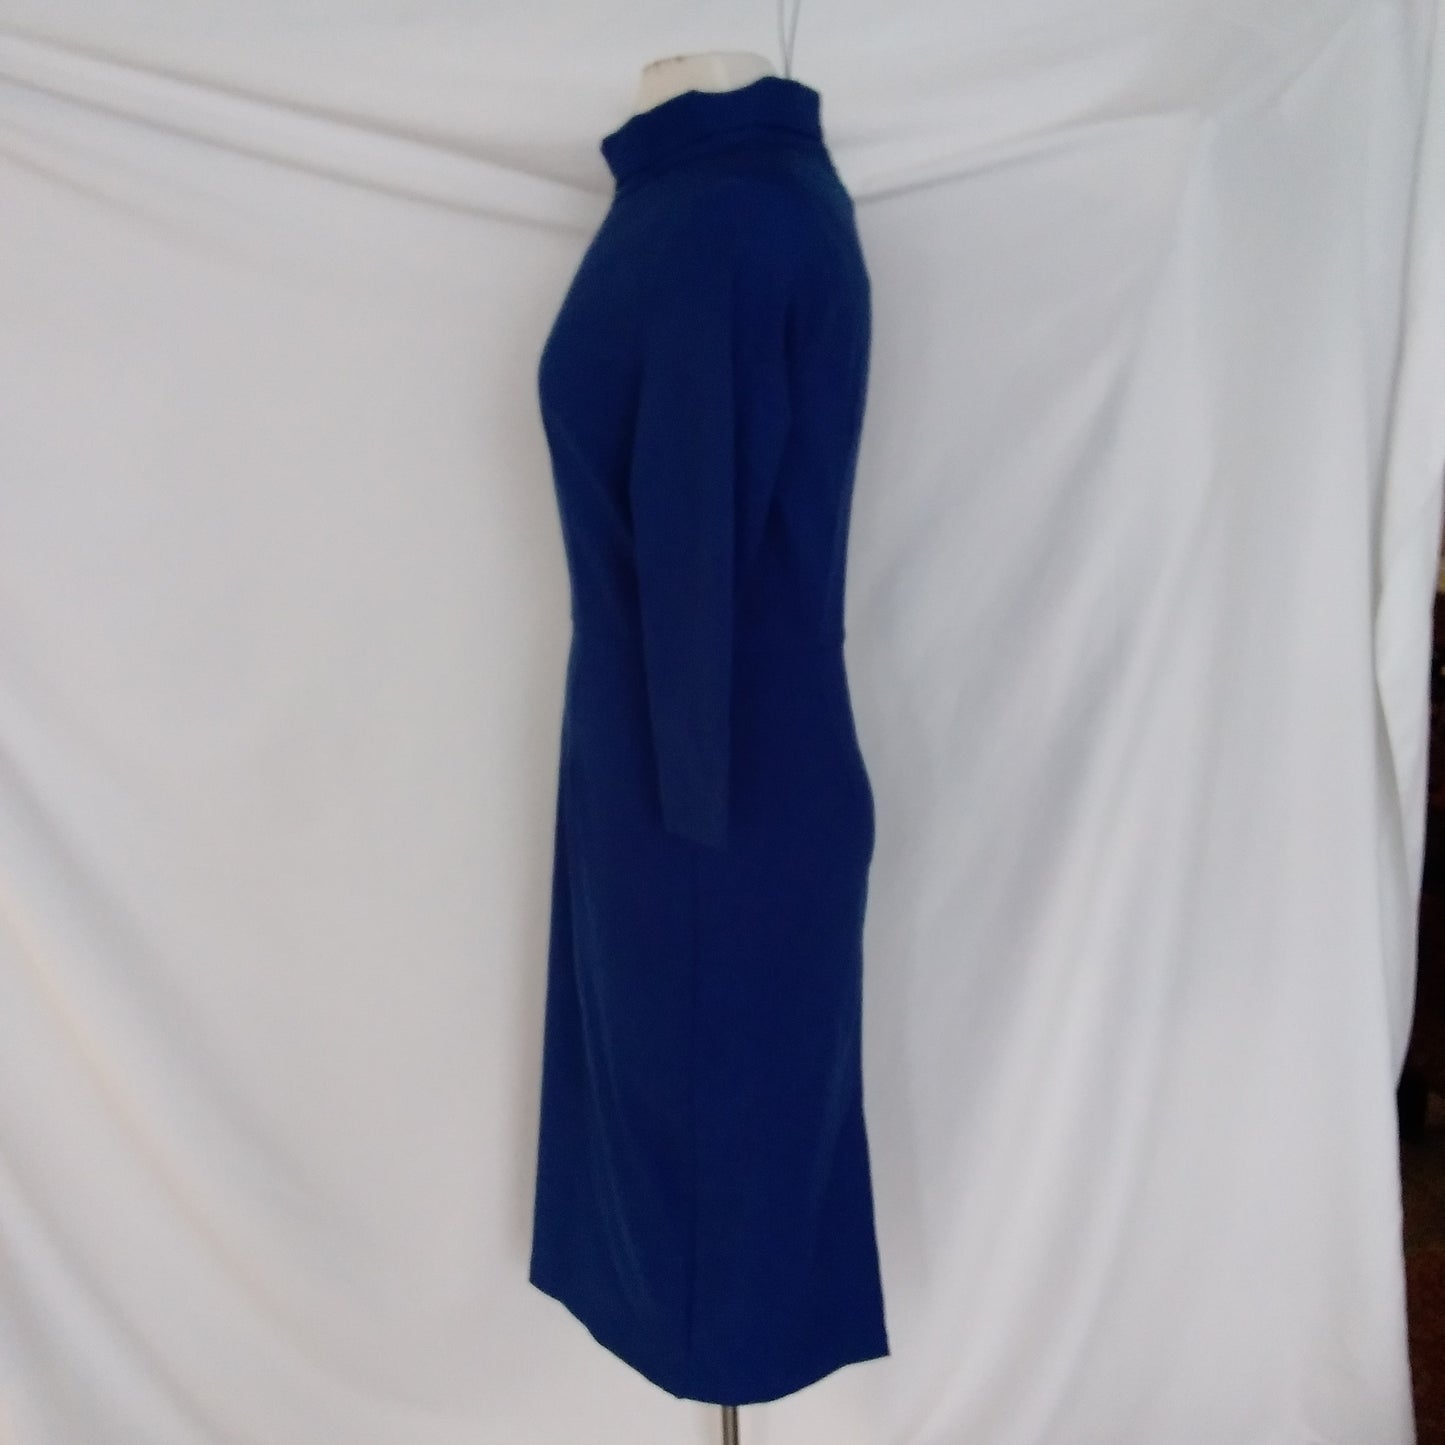 Muxxn Boutique Blue Dress - NWT - Size L